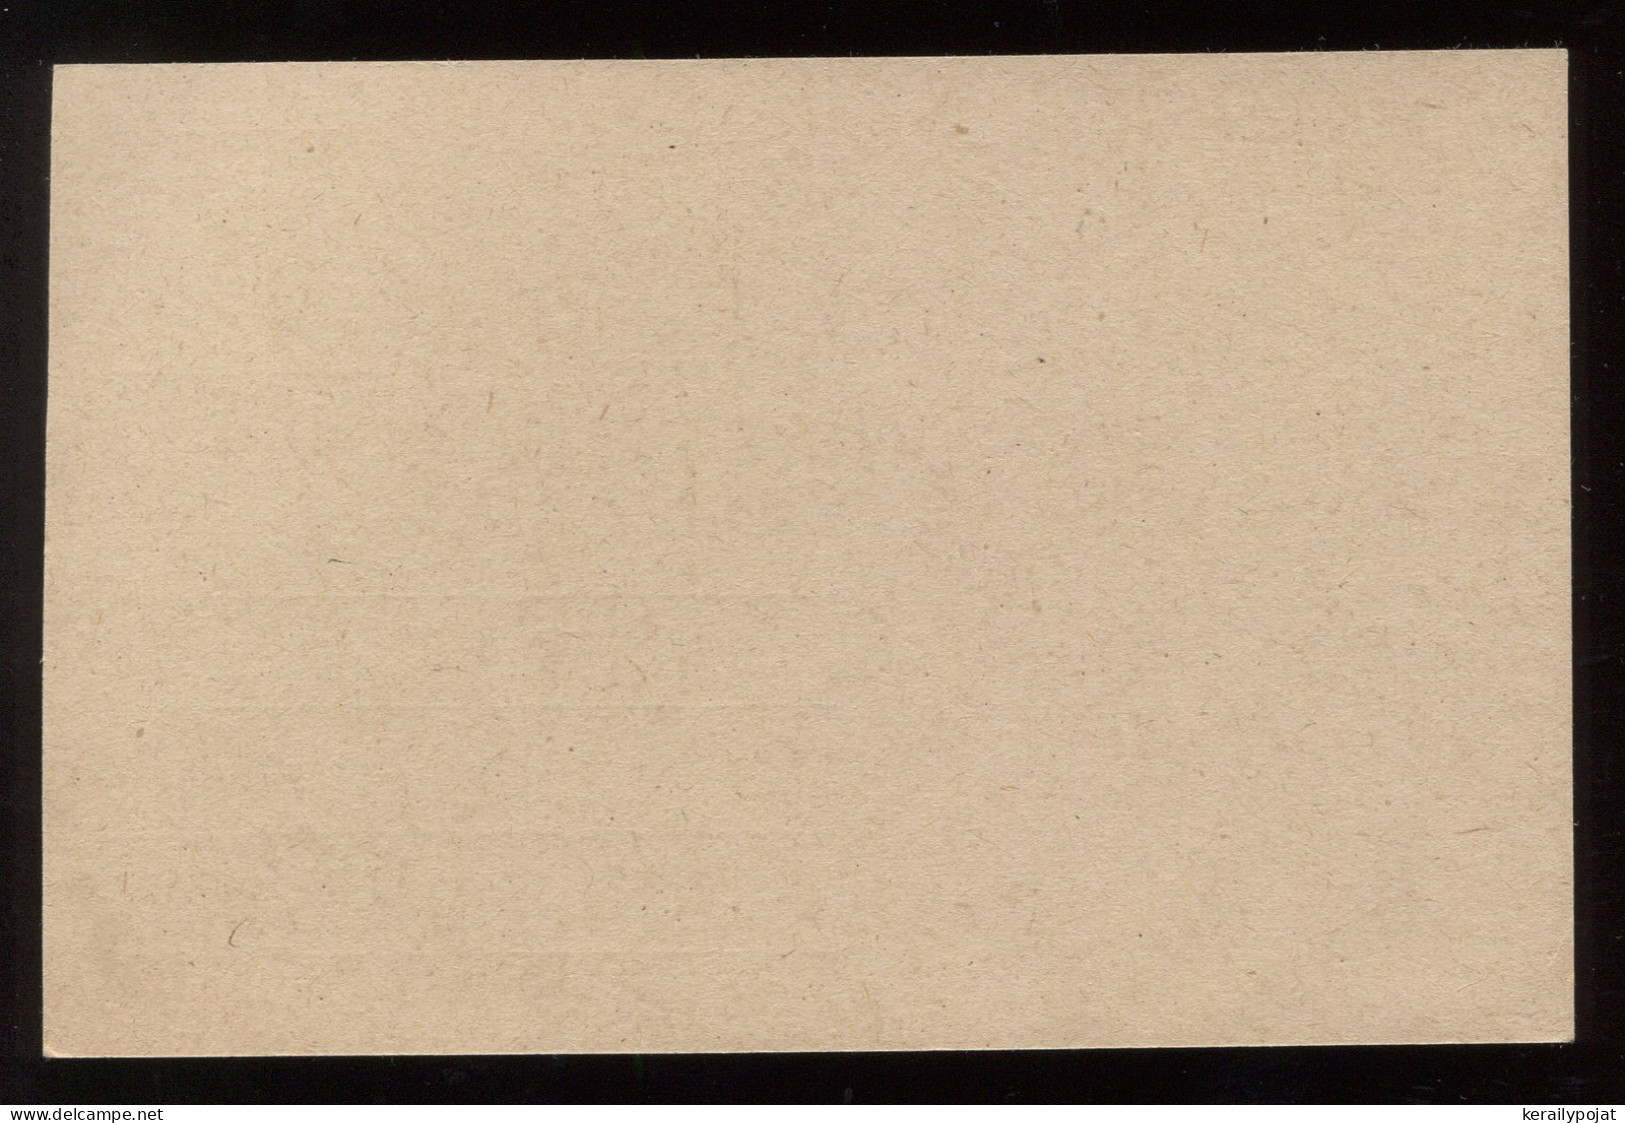 Saargebiet 1920's 40c Unused Stationery Card__(8286) - Postal Stationery